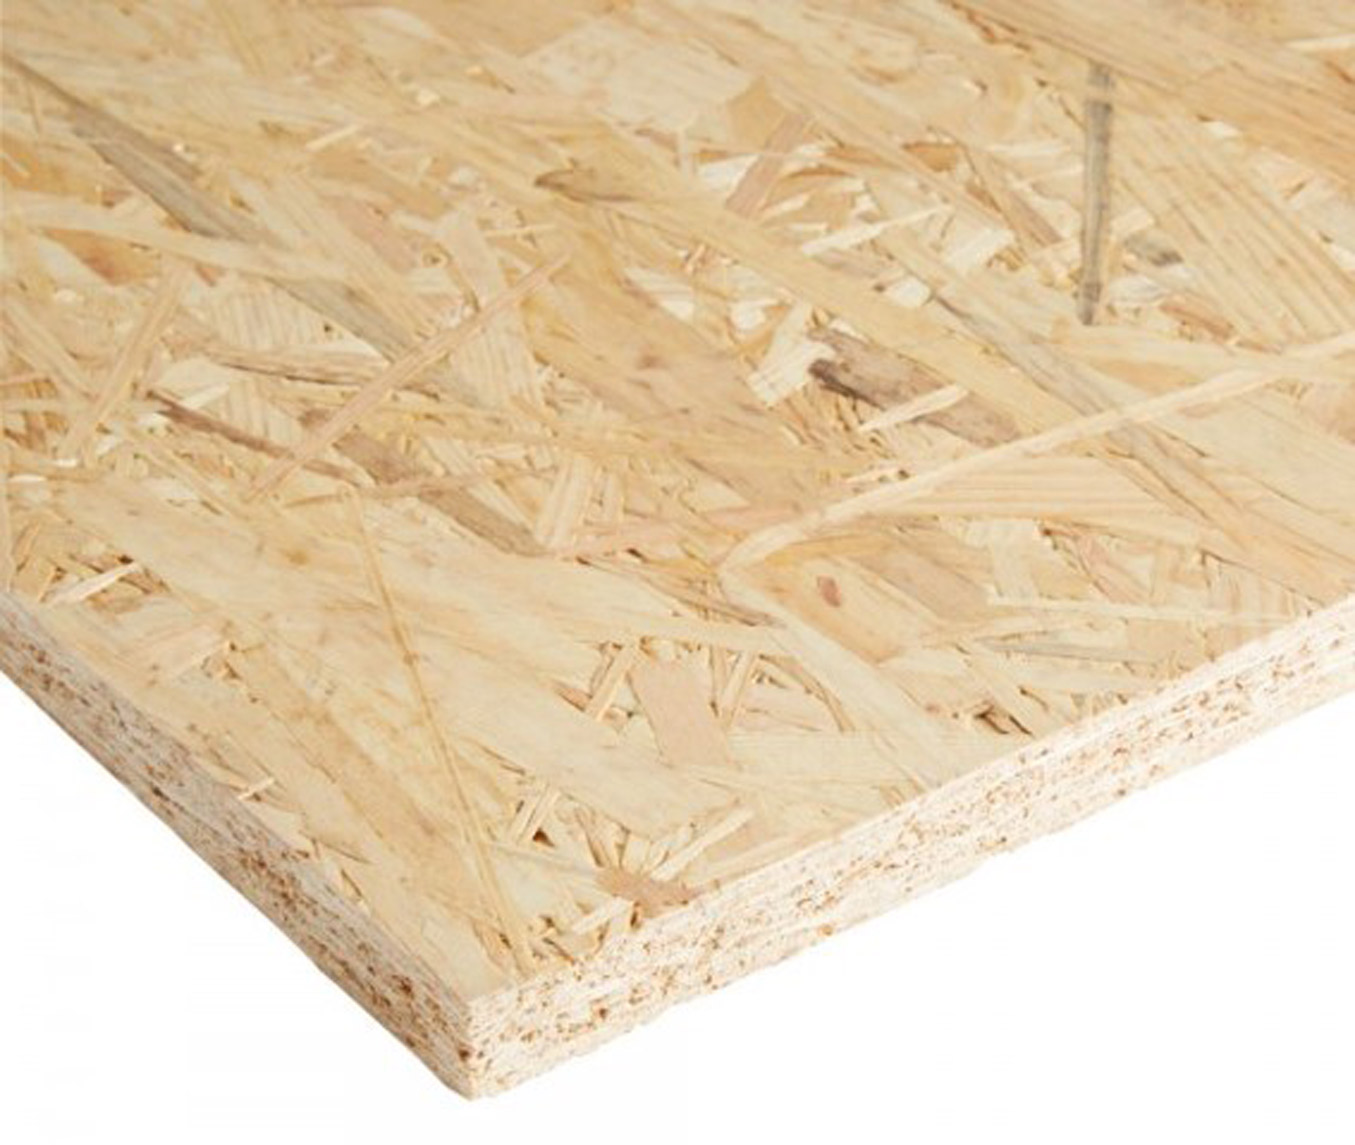 Los sistemas constructivos en tableros de madera, tipos, características y usos, Estudio b76.